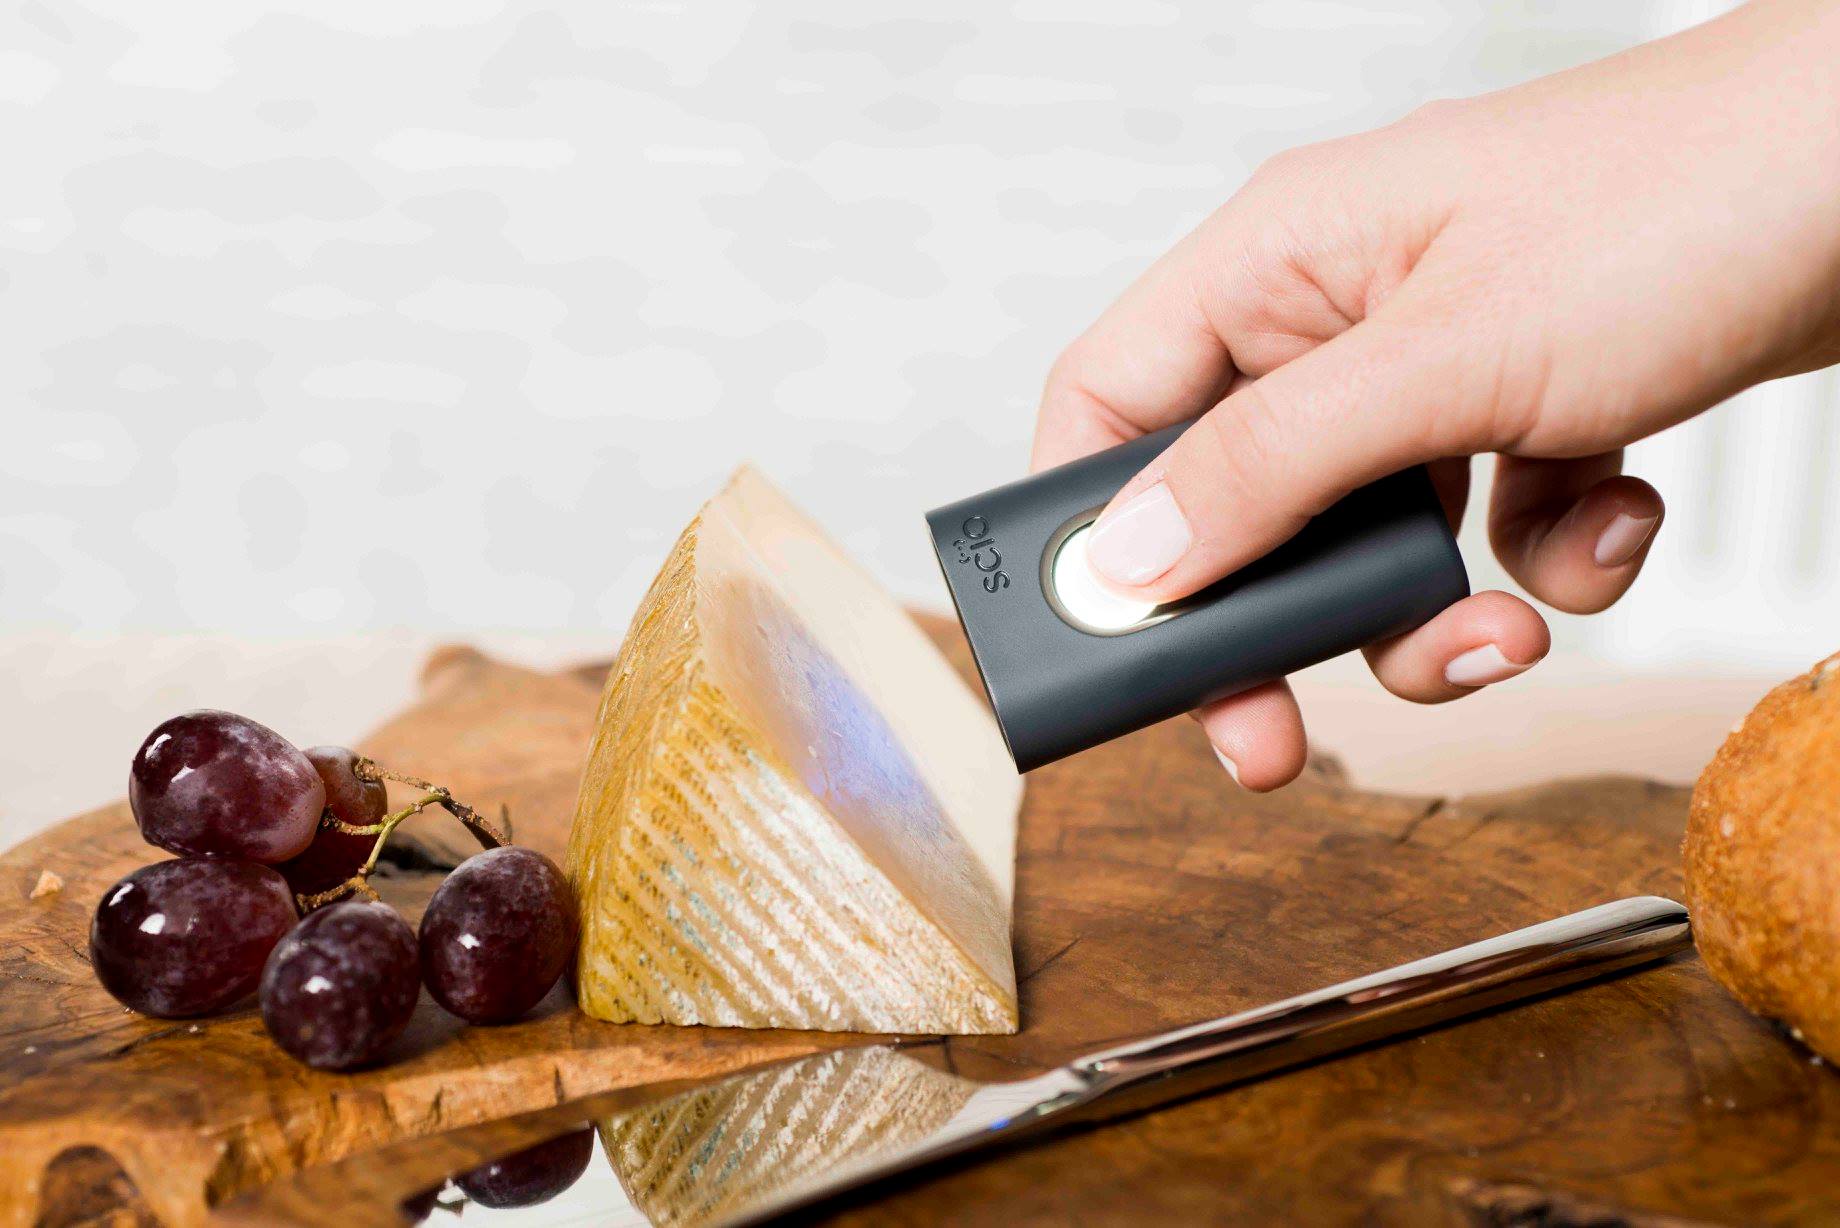 Este gadget es capaz de conocer el valor nutricional de los alimentos con solo un escaneo.